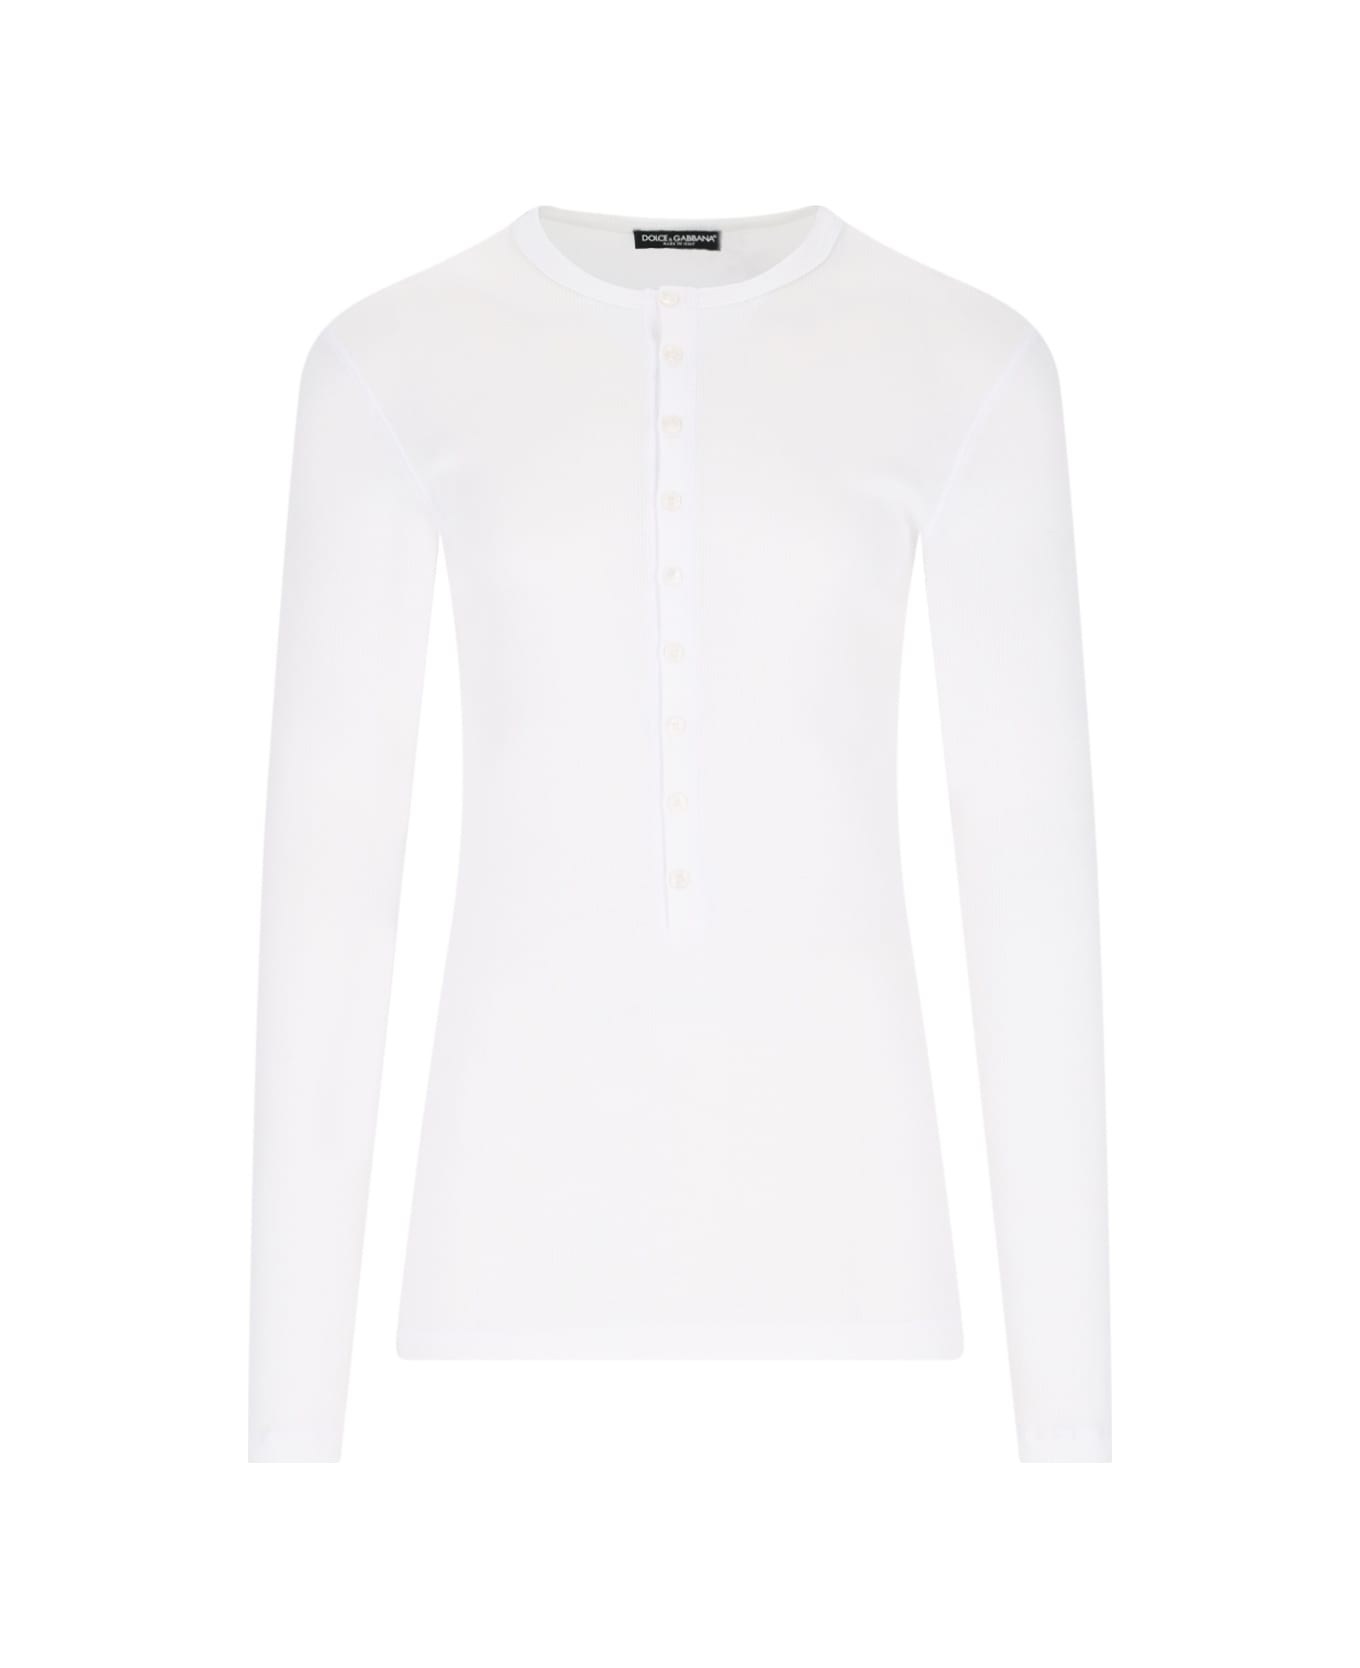 Dolce & Gabbana 'serafino' T-shirt - White シャツ